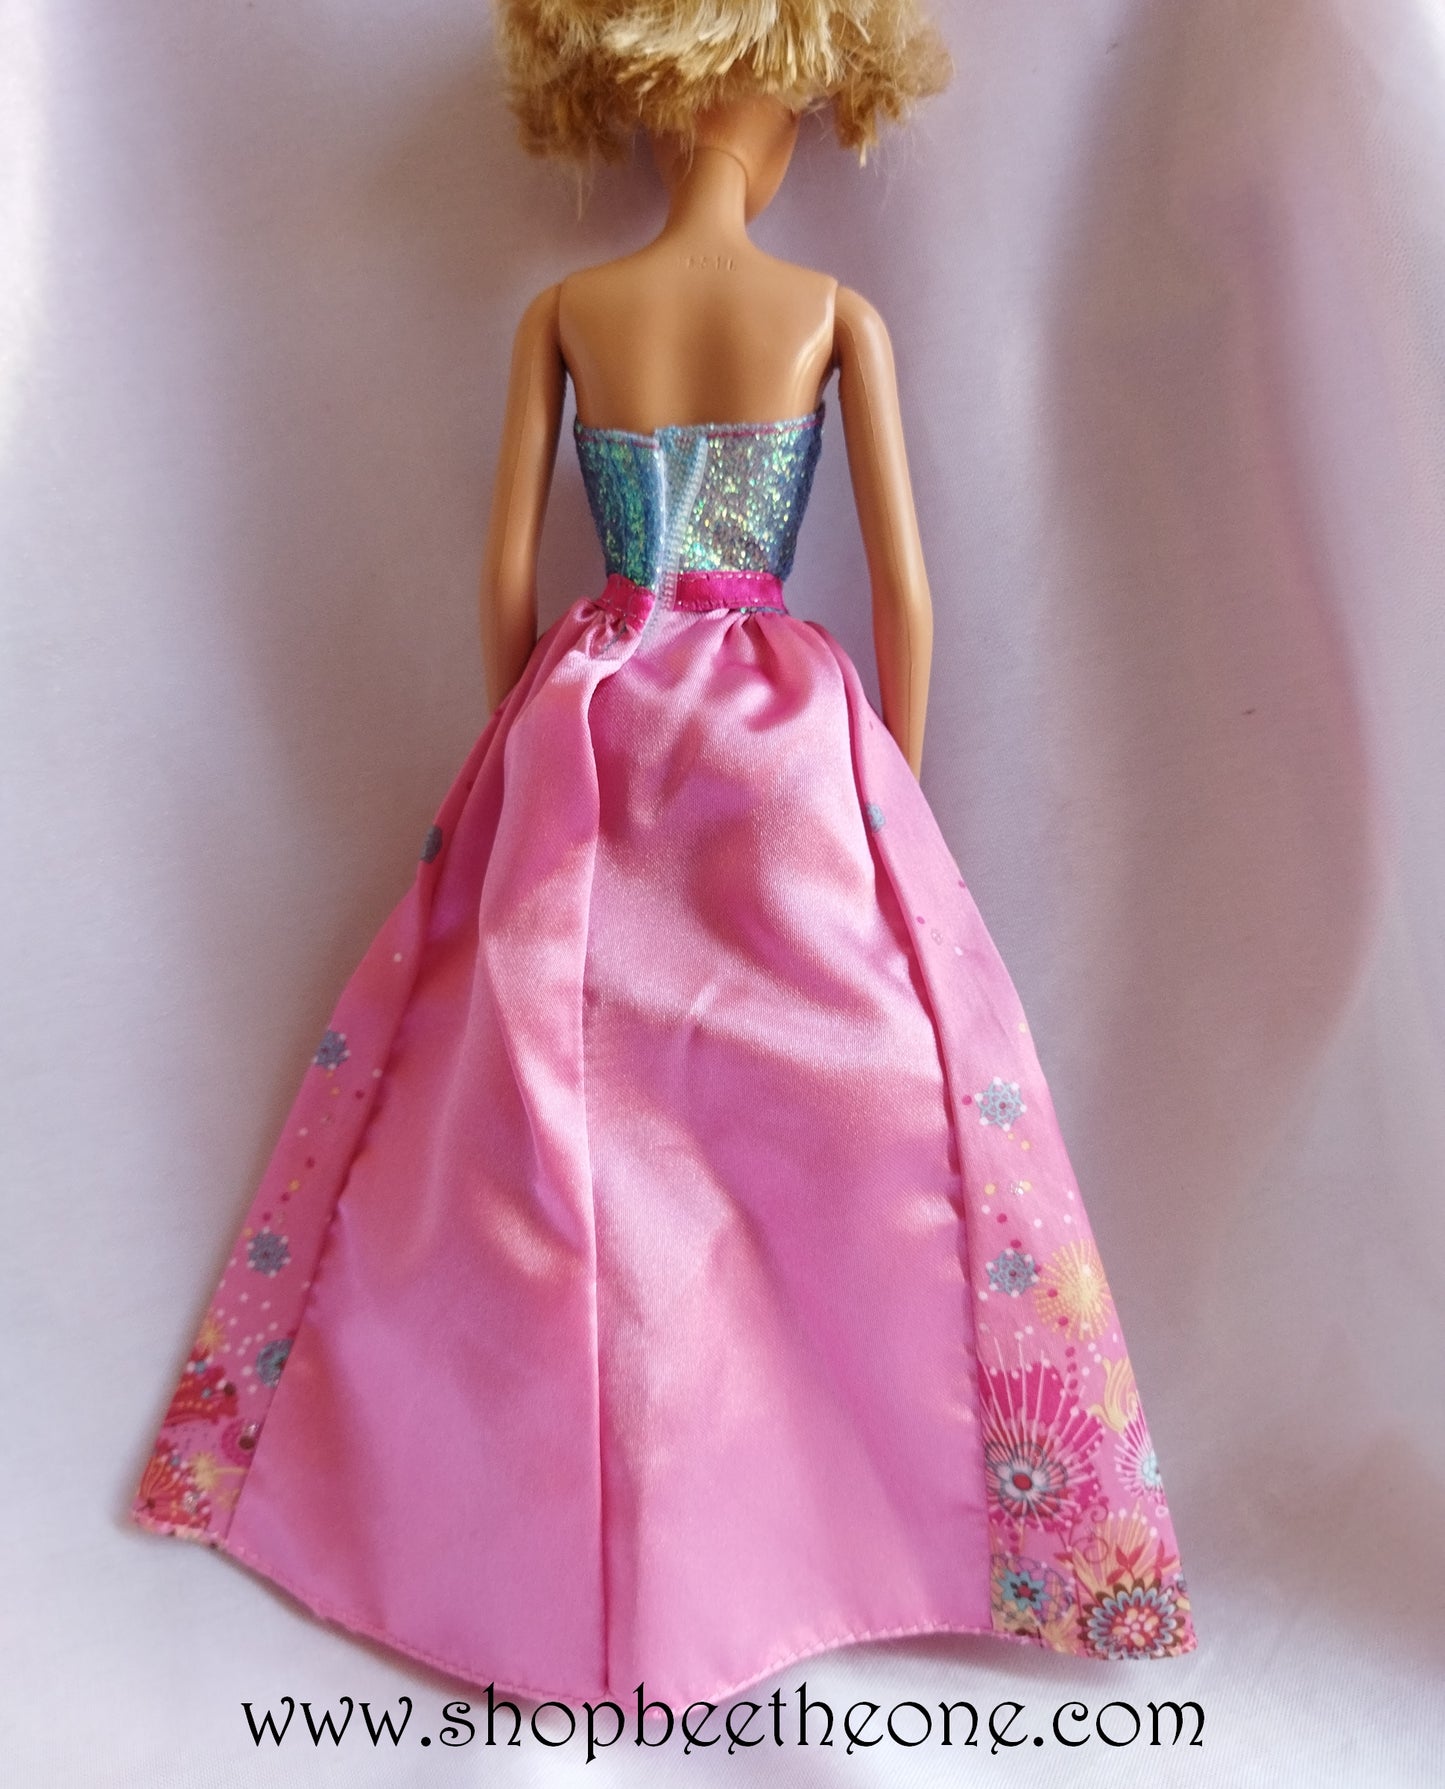 Barbie Princesse Longue Chevelure (Cut 'n Style Princess) - Mattel 2010 - Poupée - Vêtement